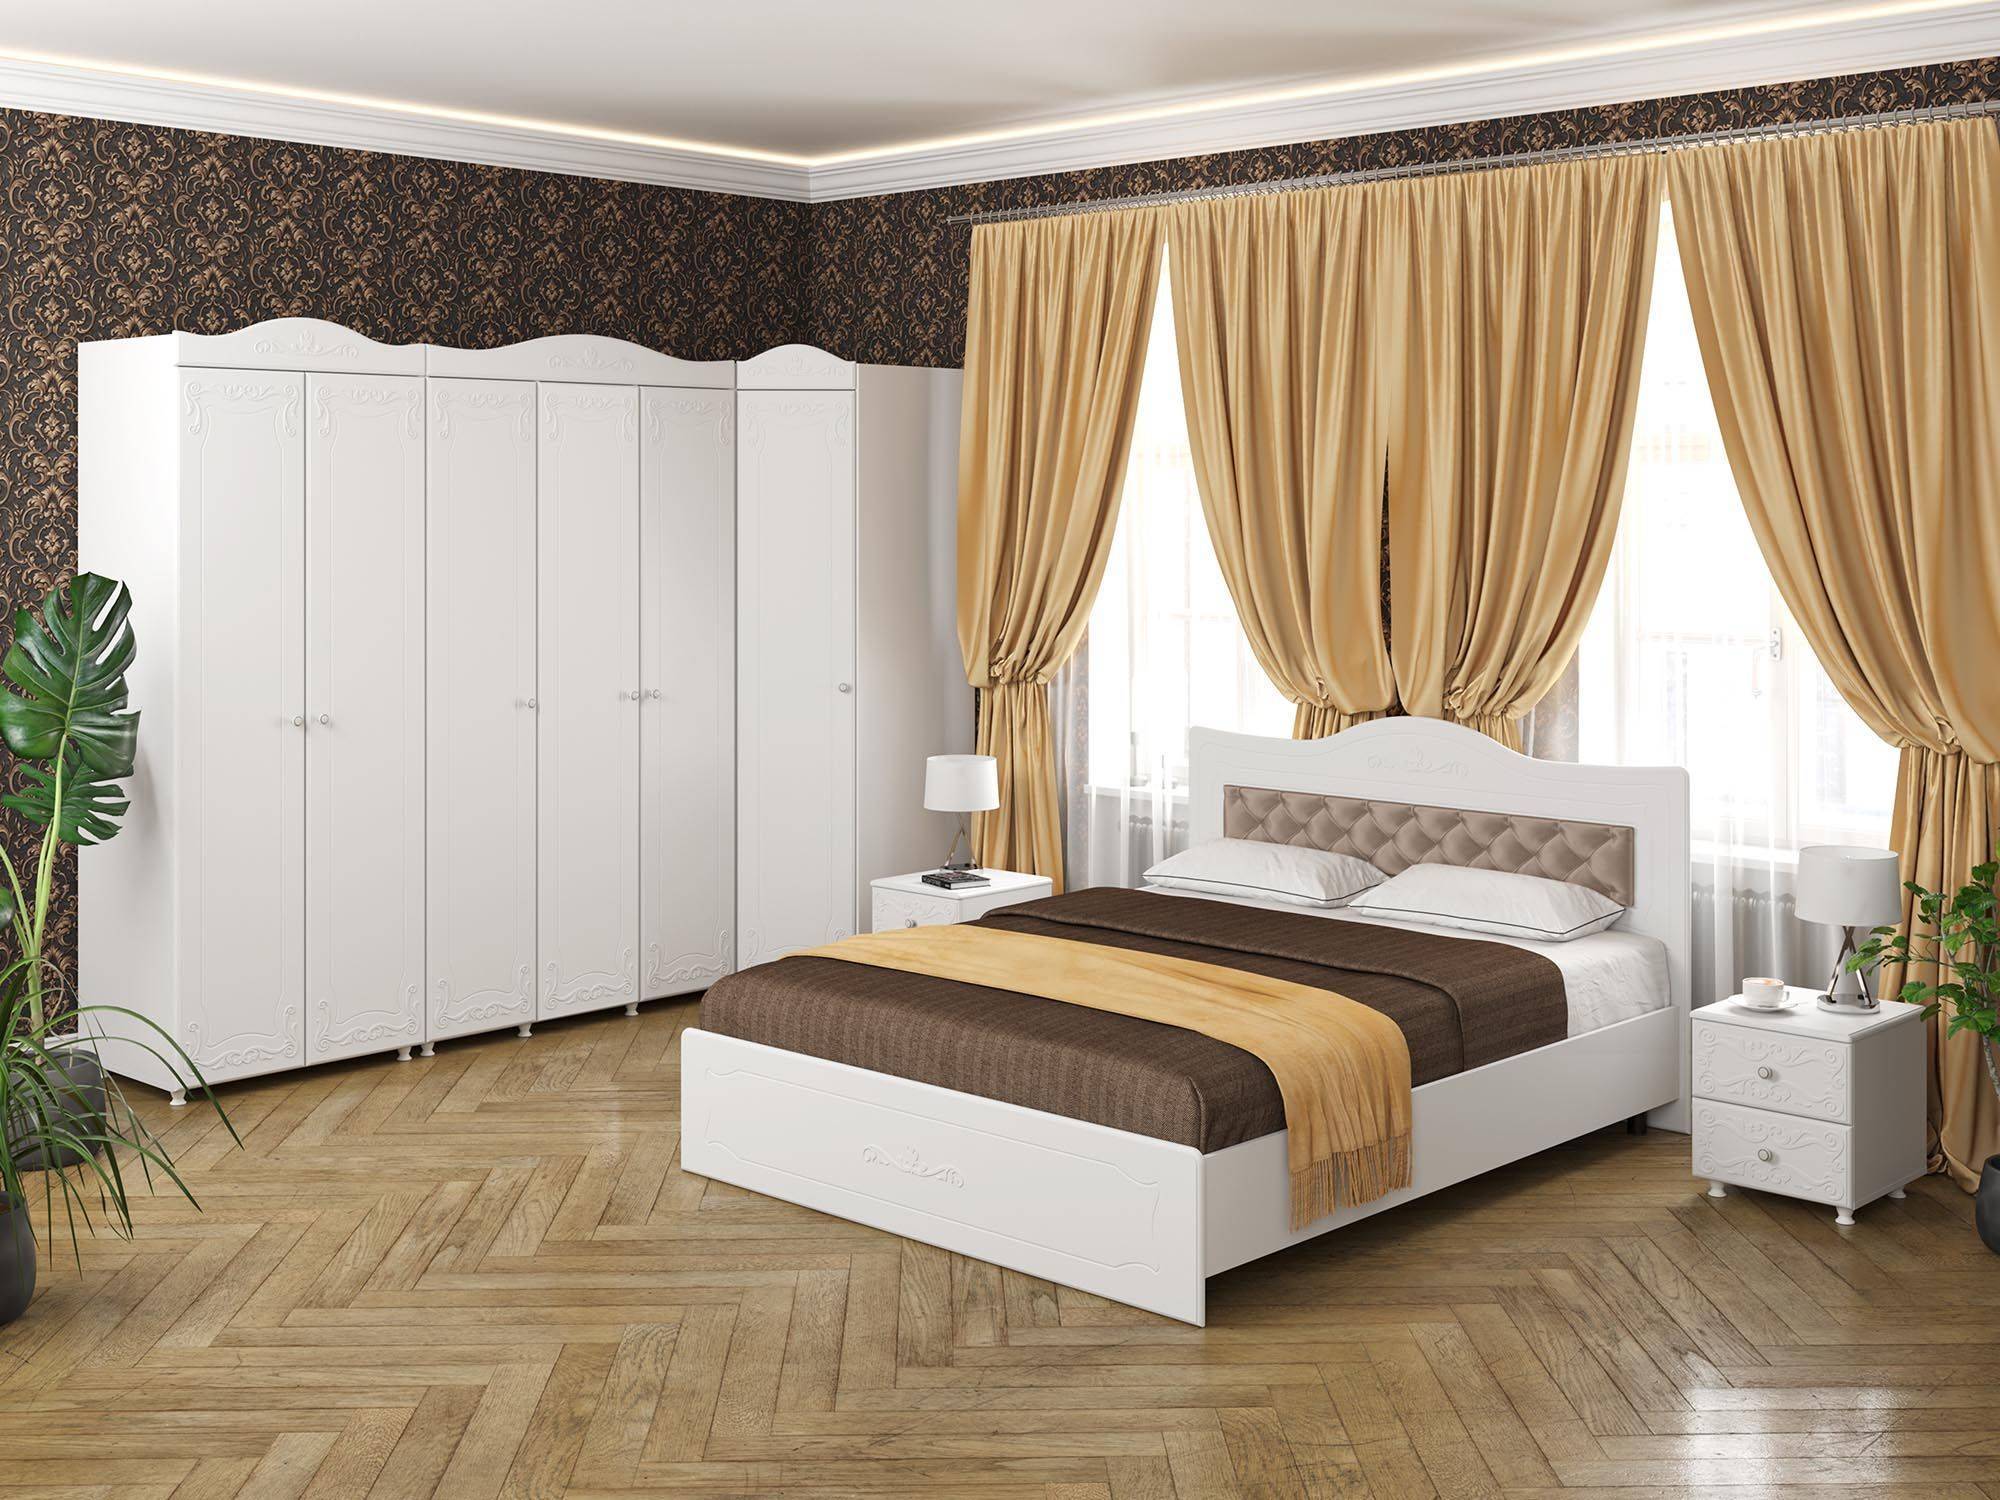 Спальня Италия-4 мягкая спинка белое дерево Белое дерево, Белый, МДФ, ЛДСП италия спальня мягкая спинка 2м